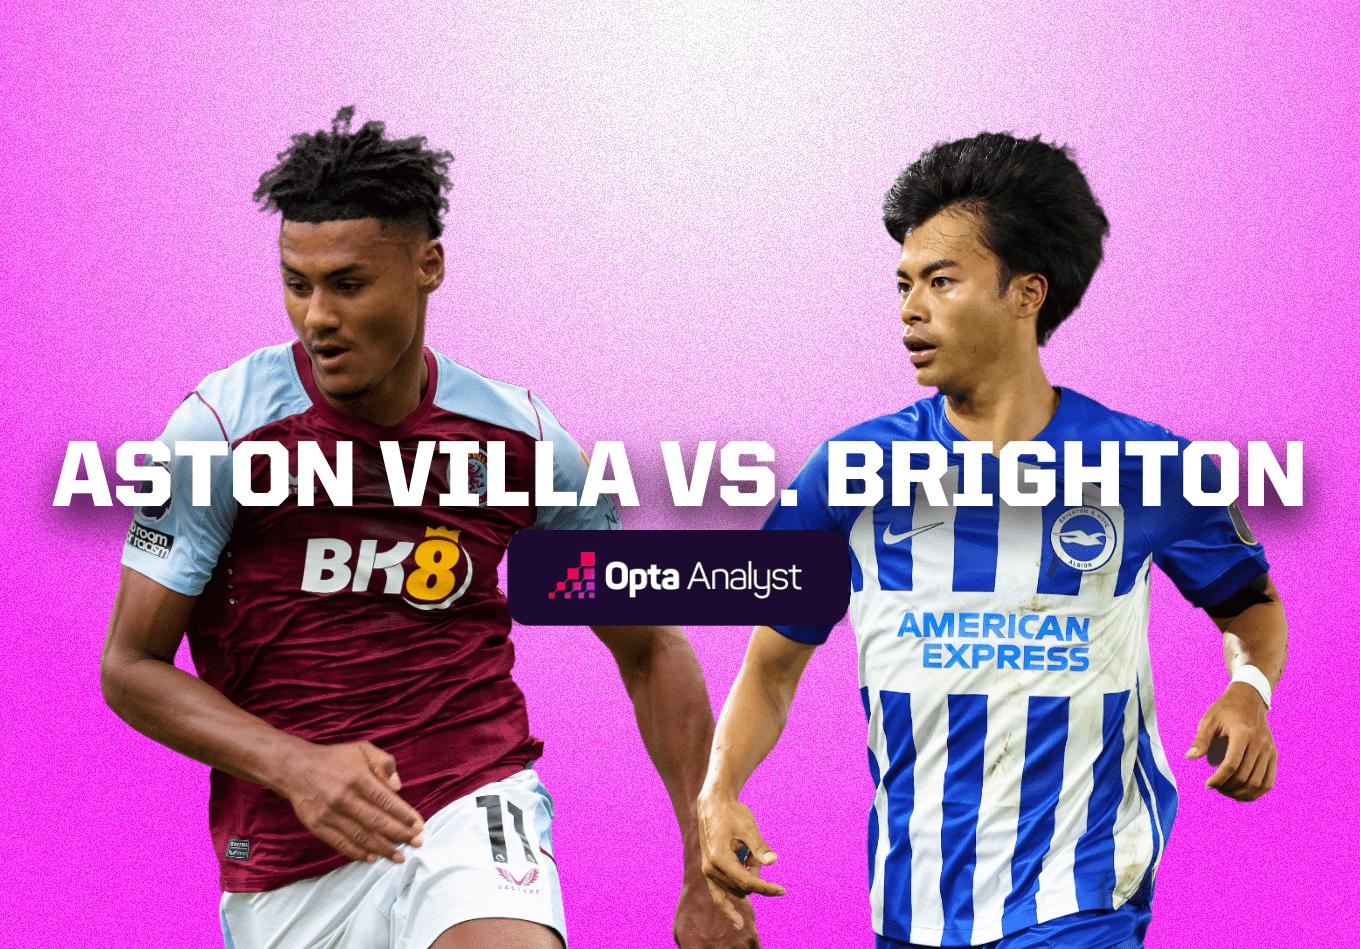 Aston villa vs brighton